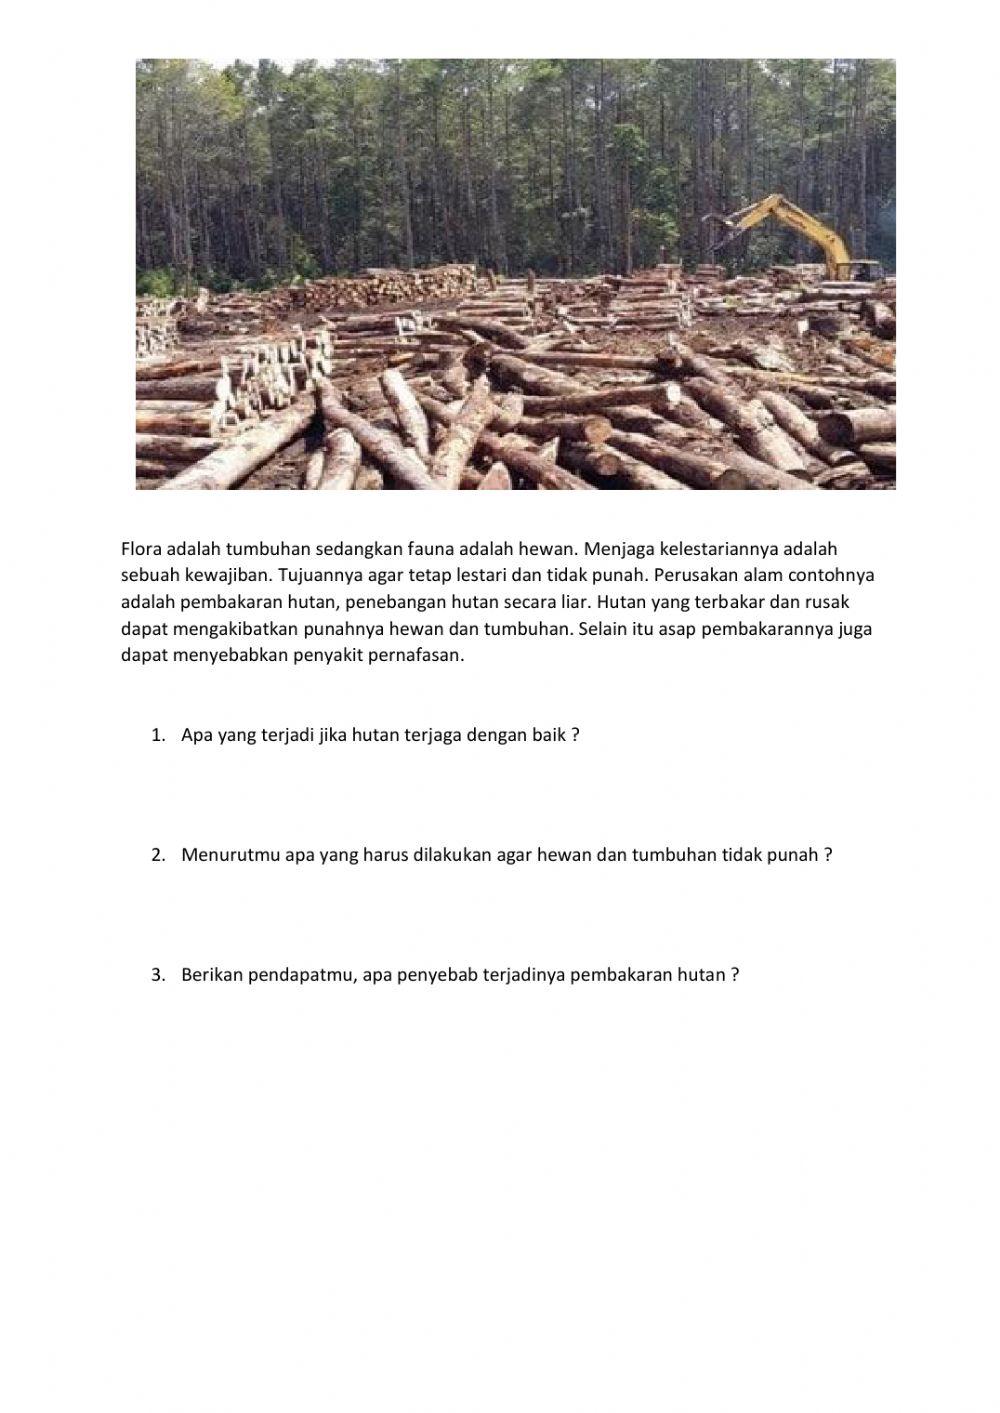 Menganalisa kerusakan hutan